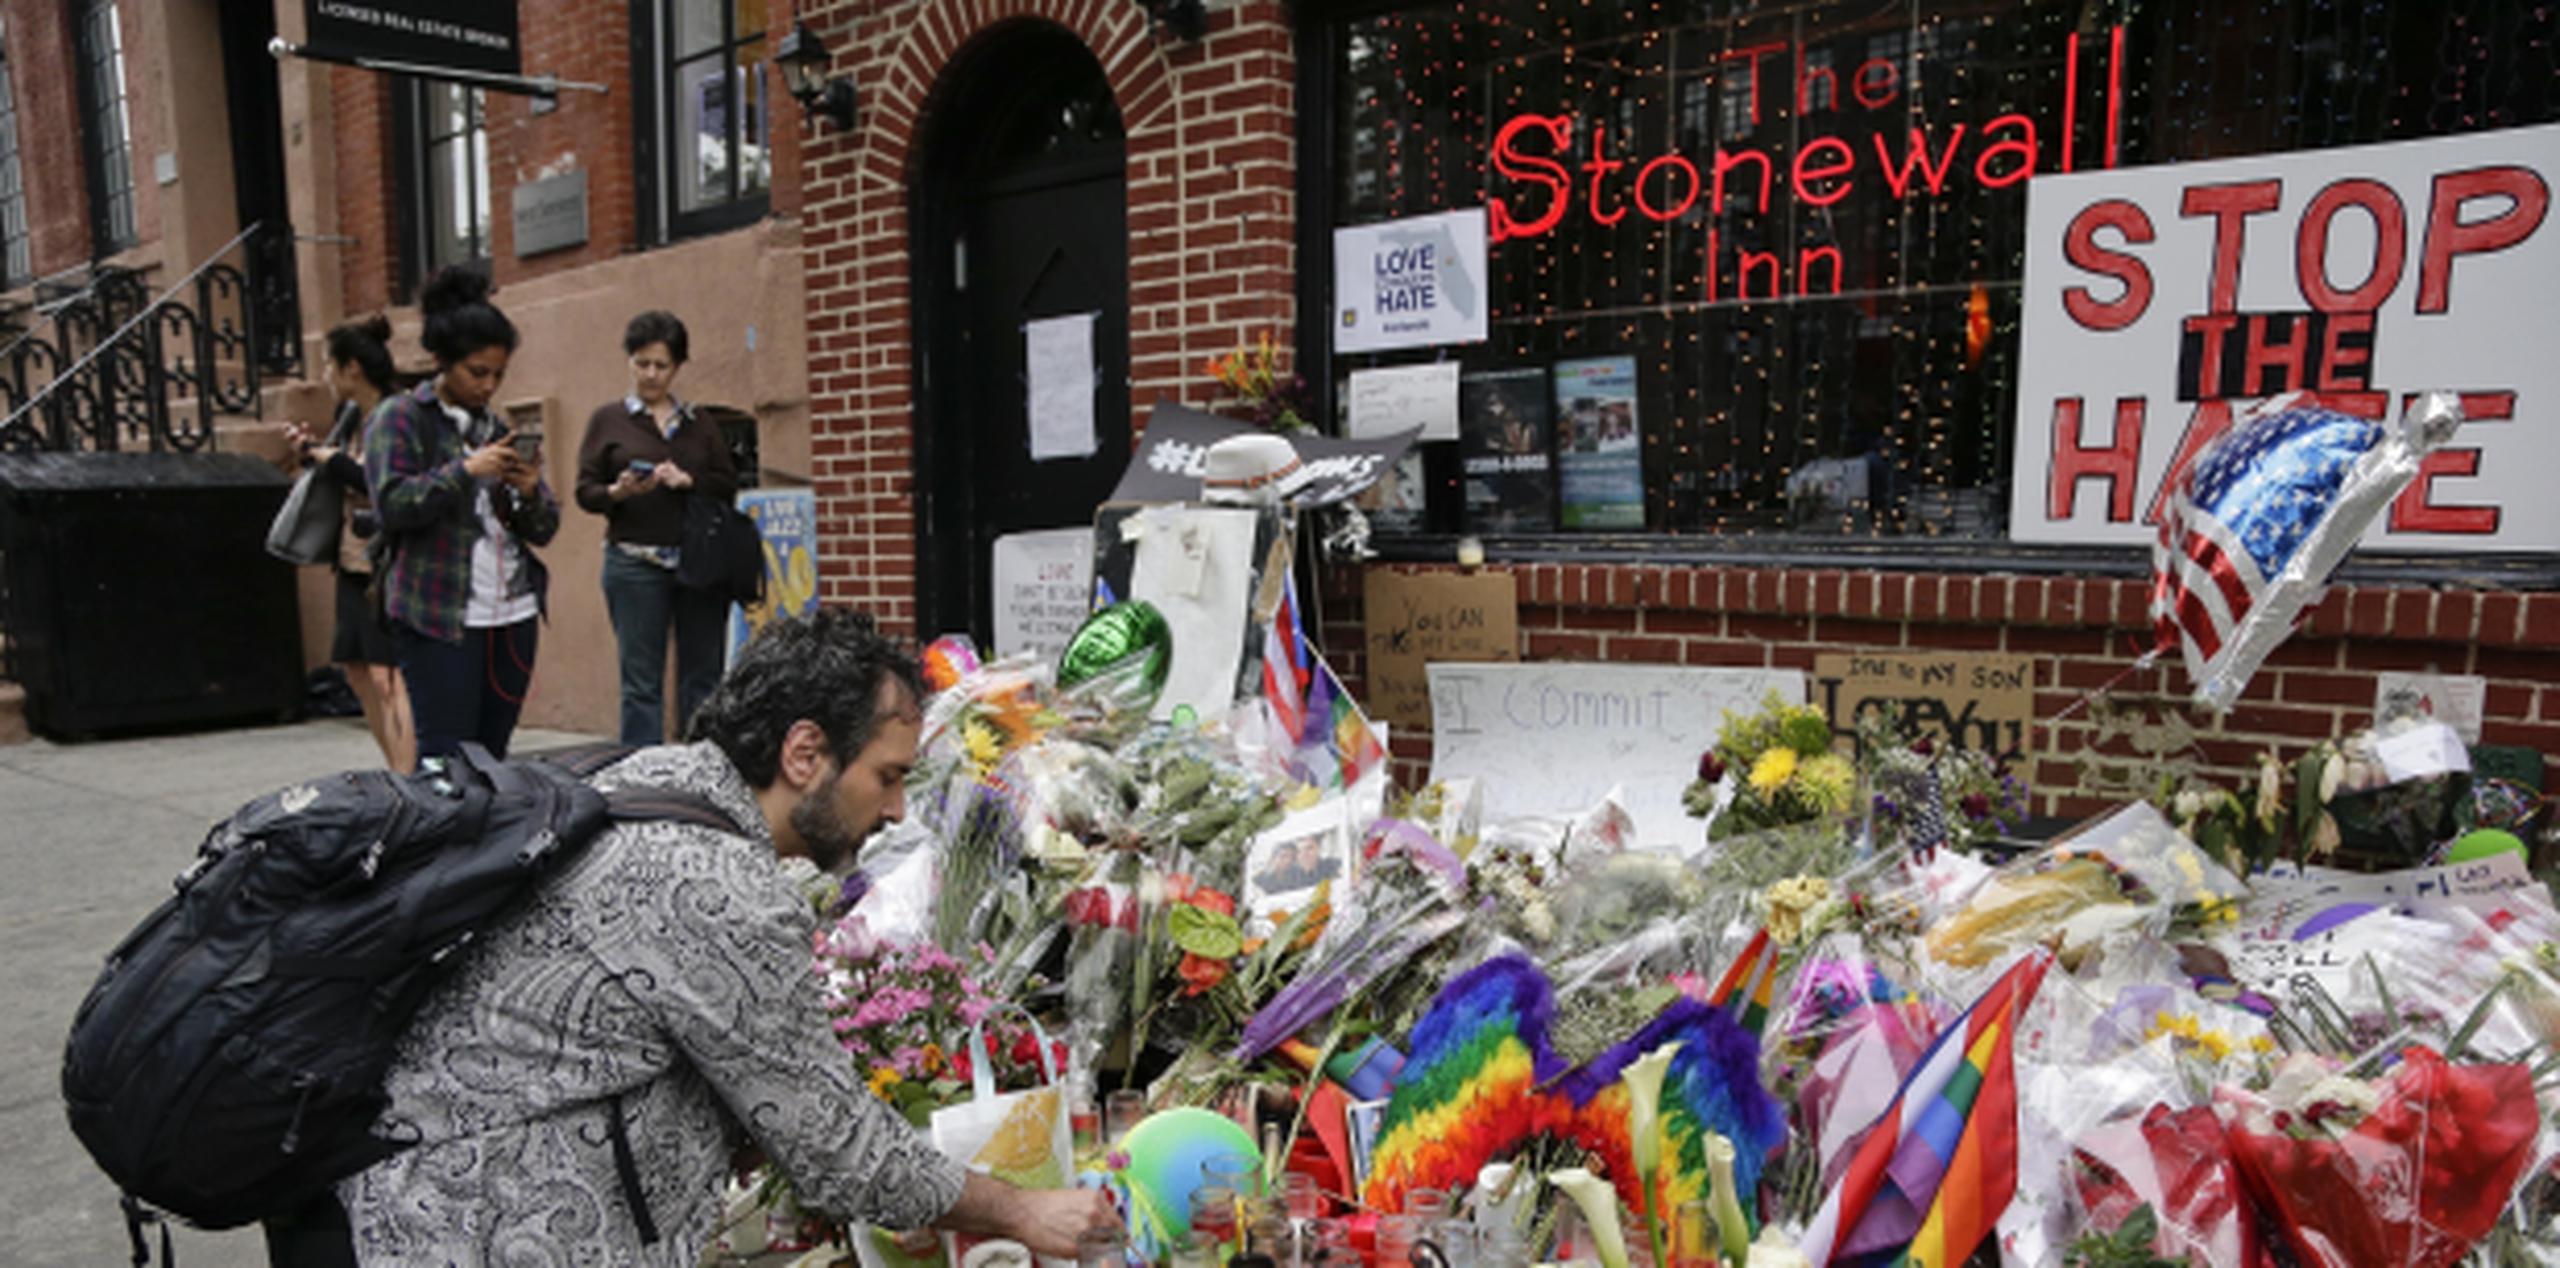 Frente a la barra se honraron las víctima de la matanza en Orlando. (Prensa Asociada)